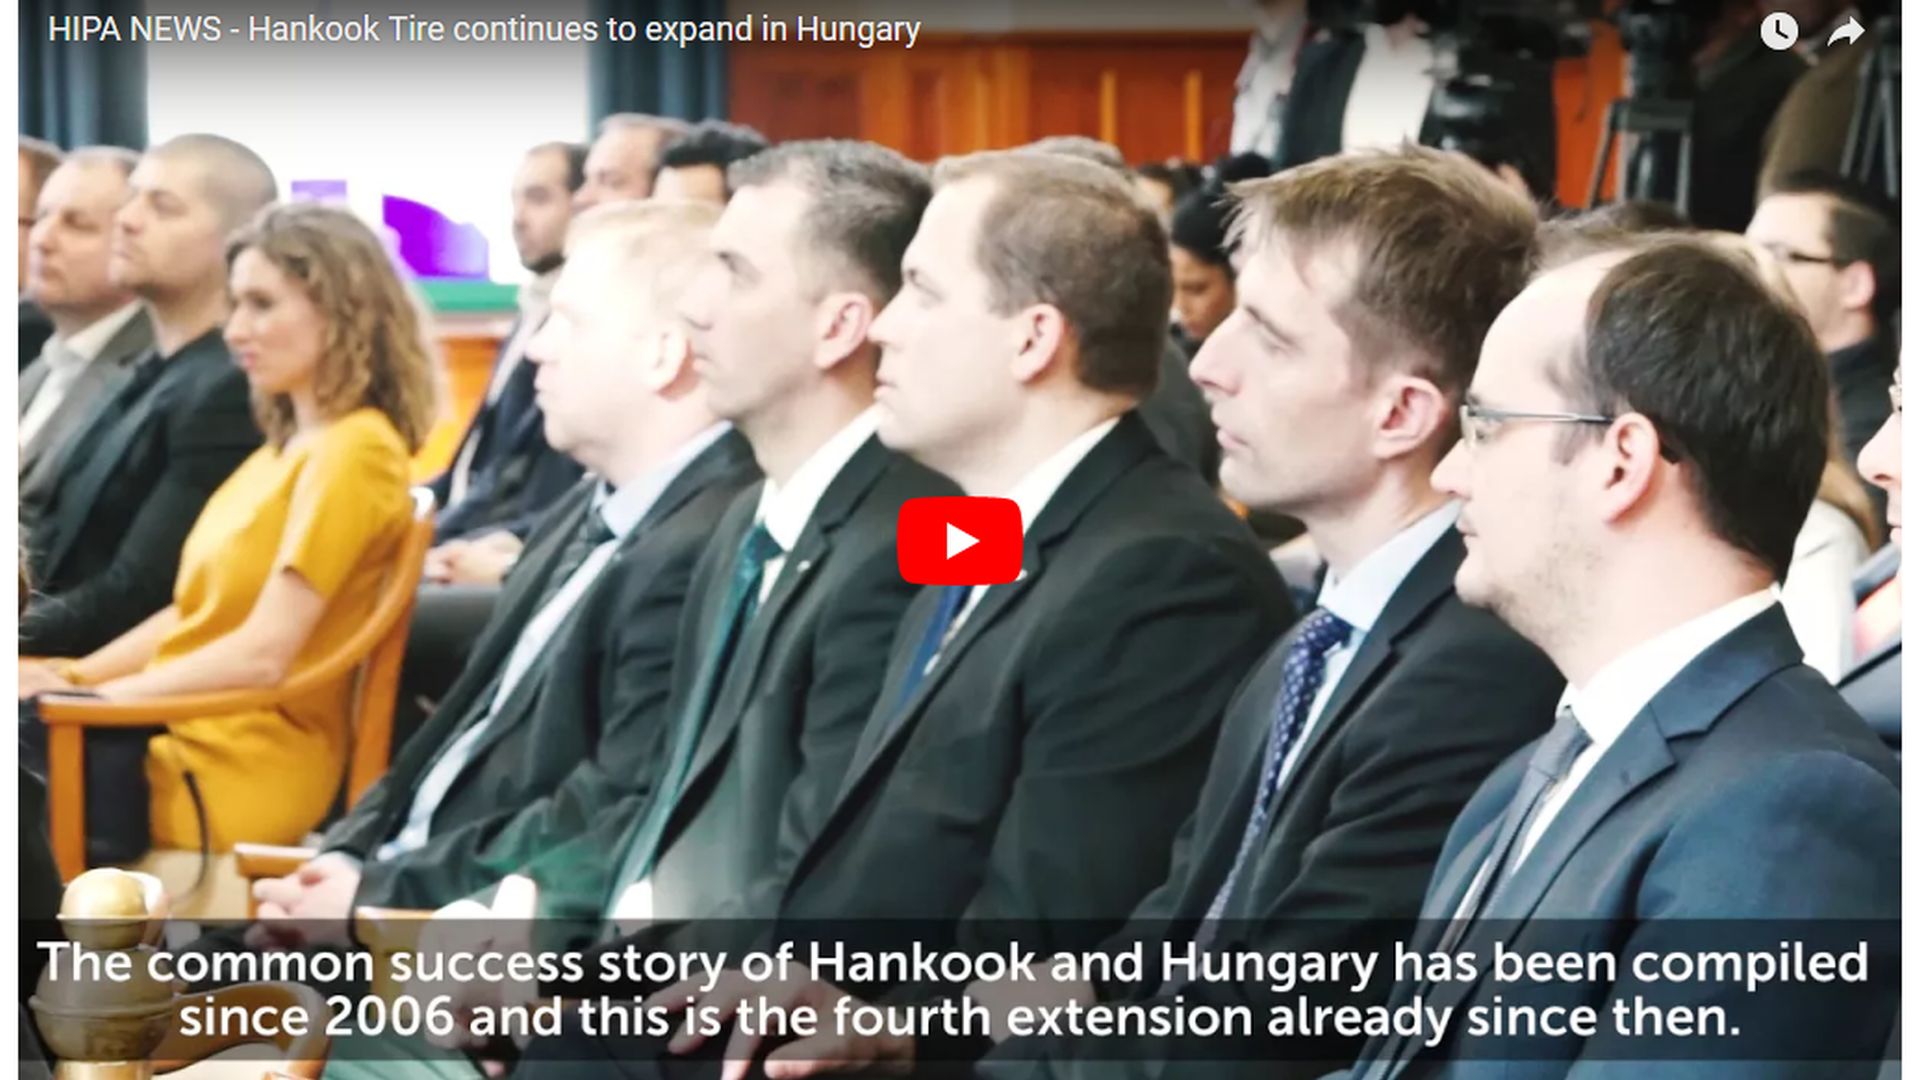 Új szegmenssel bővül a Hankook egyetlen európai termelőegysége